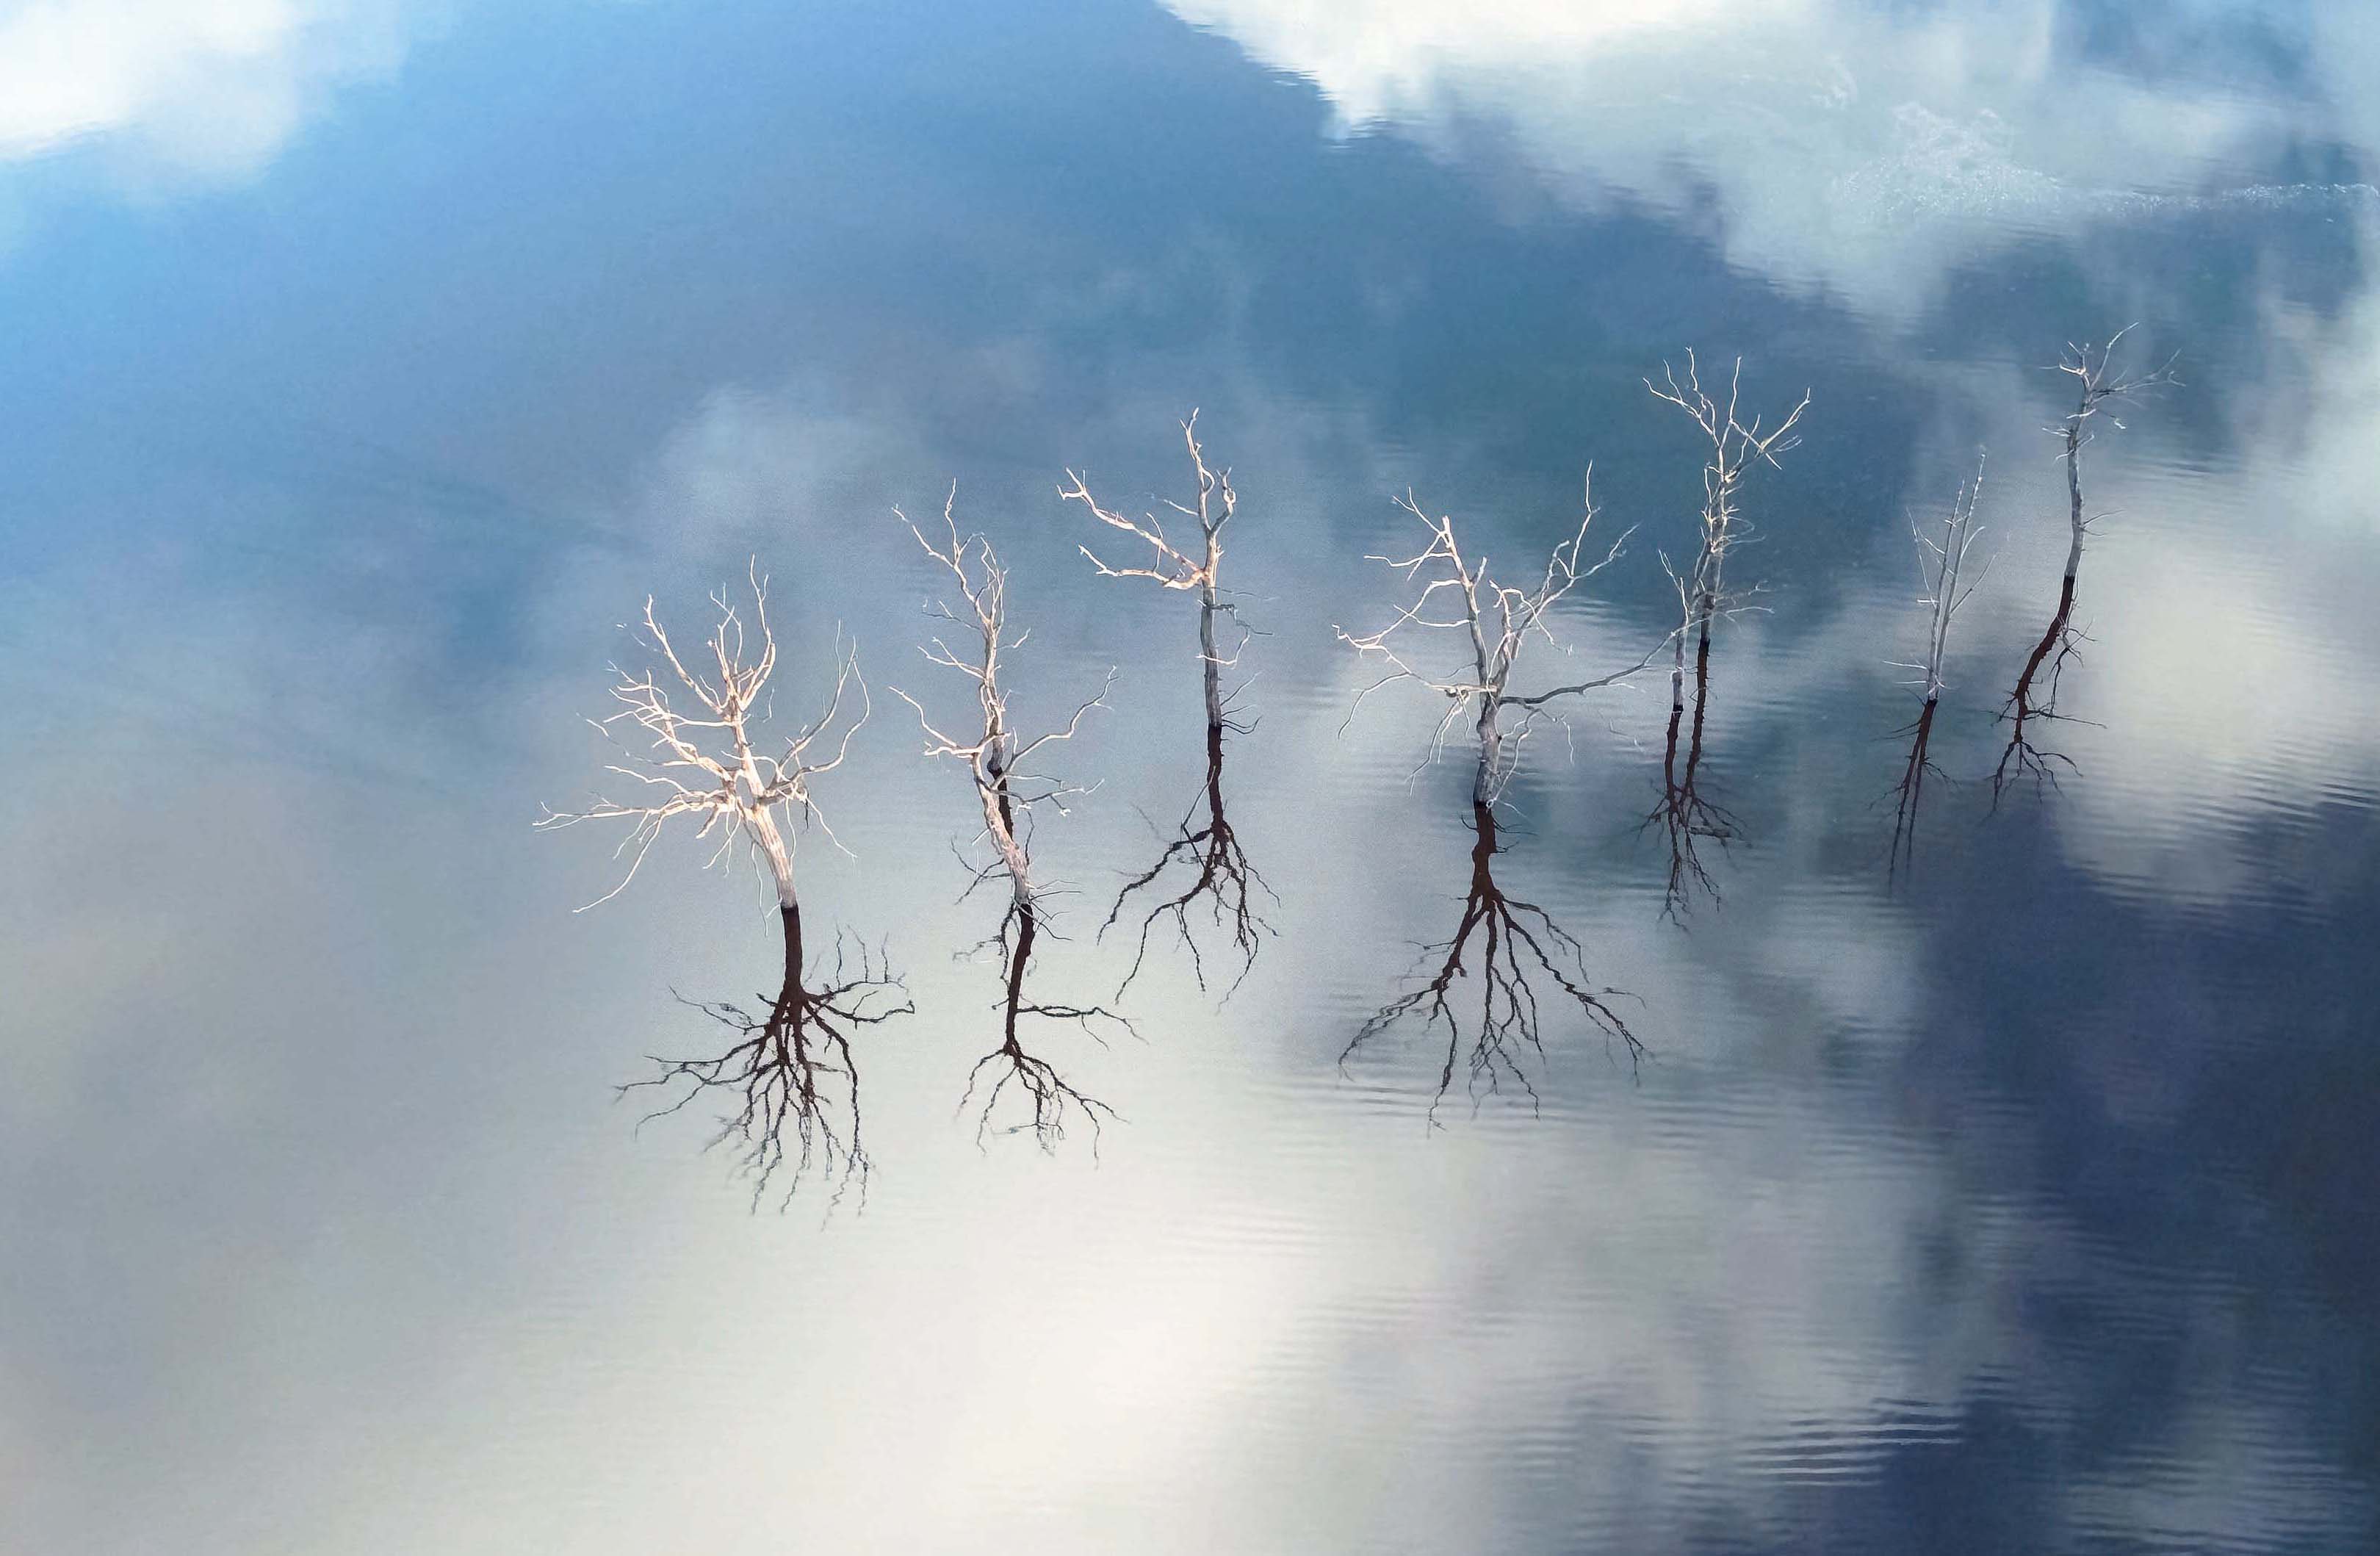 Dead trees in Lake Gueriedan, France. Taken from 98 feet.